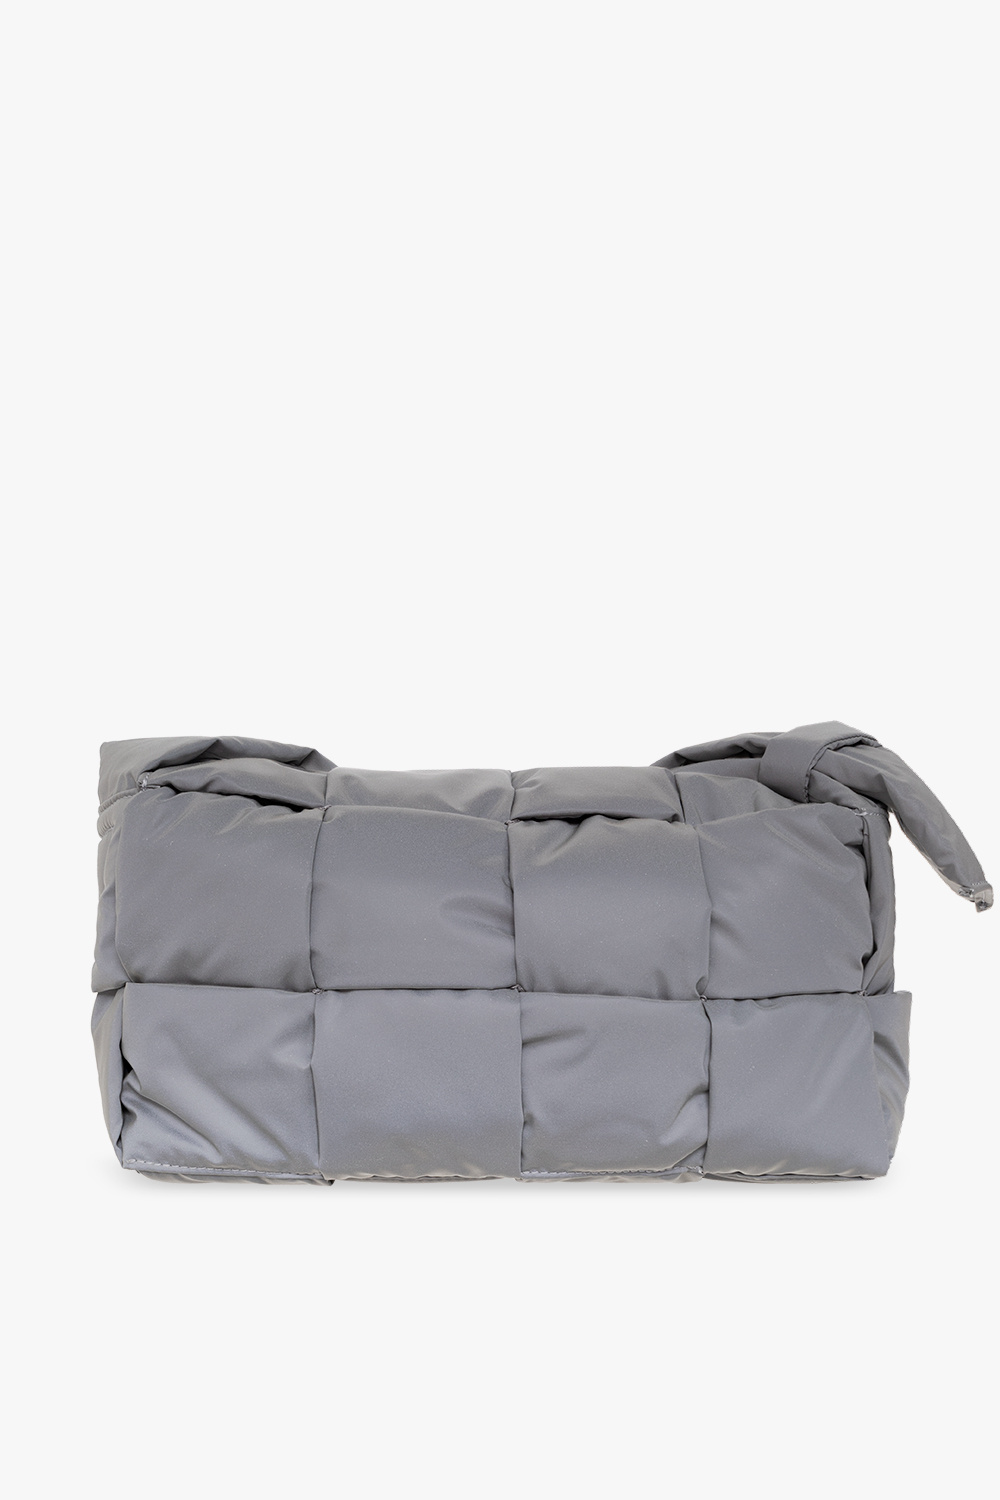 Bottega Veneta ‘Padded Tech Cassette Medium’ reflective shoulder bag